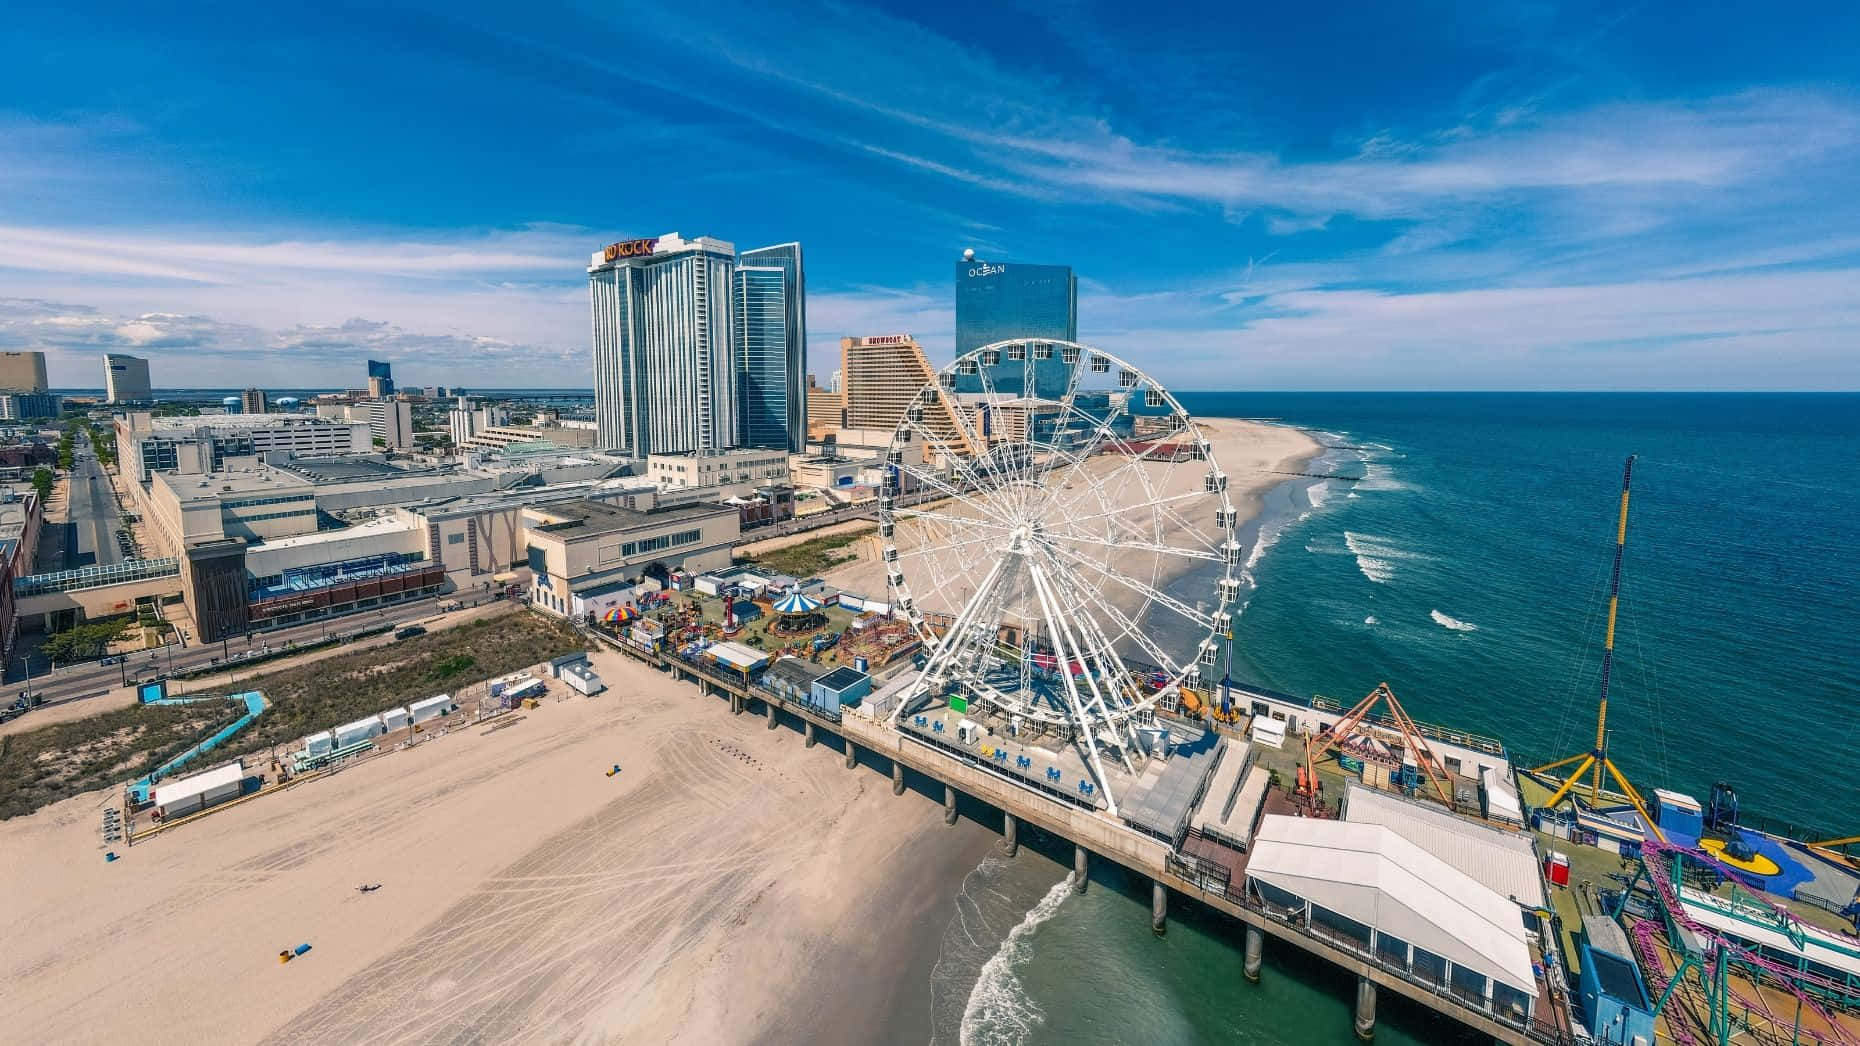 Atlantic City Theme Park By Ocean Picture